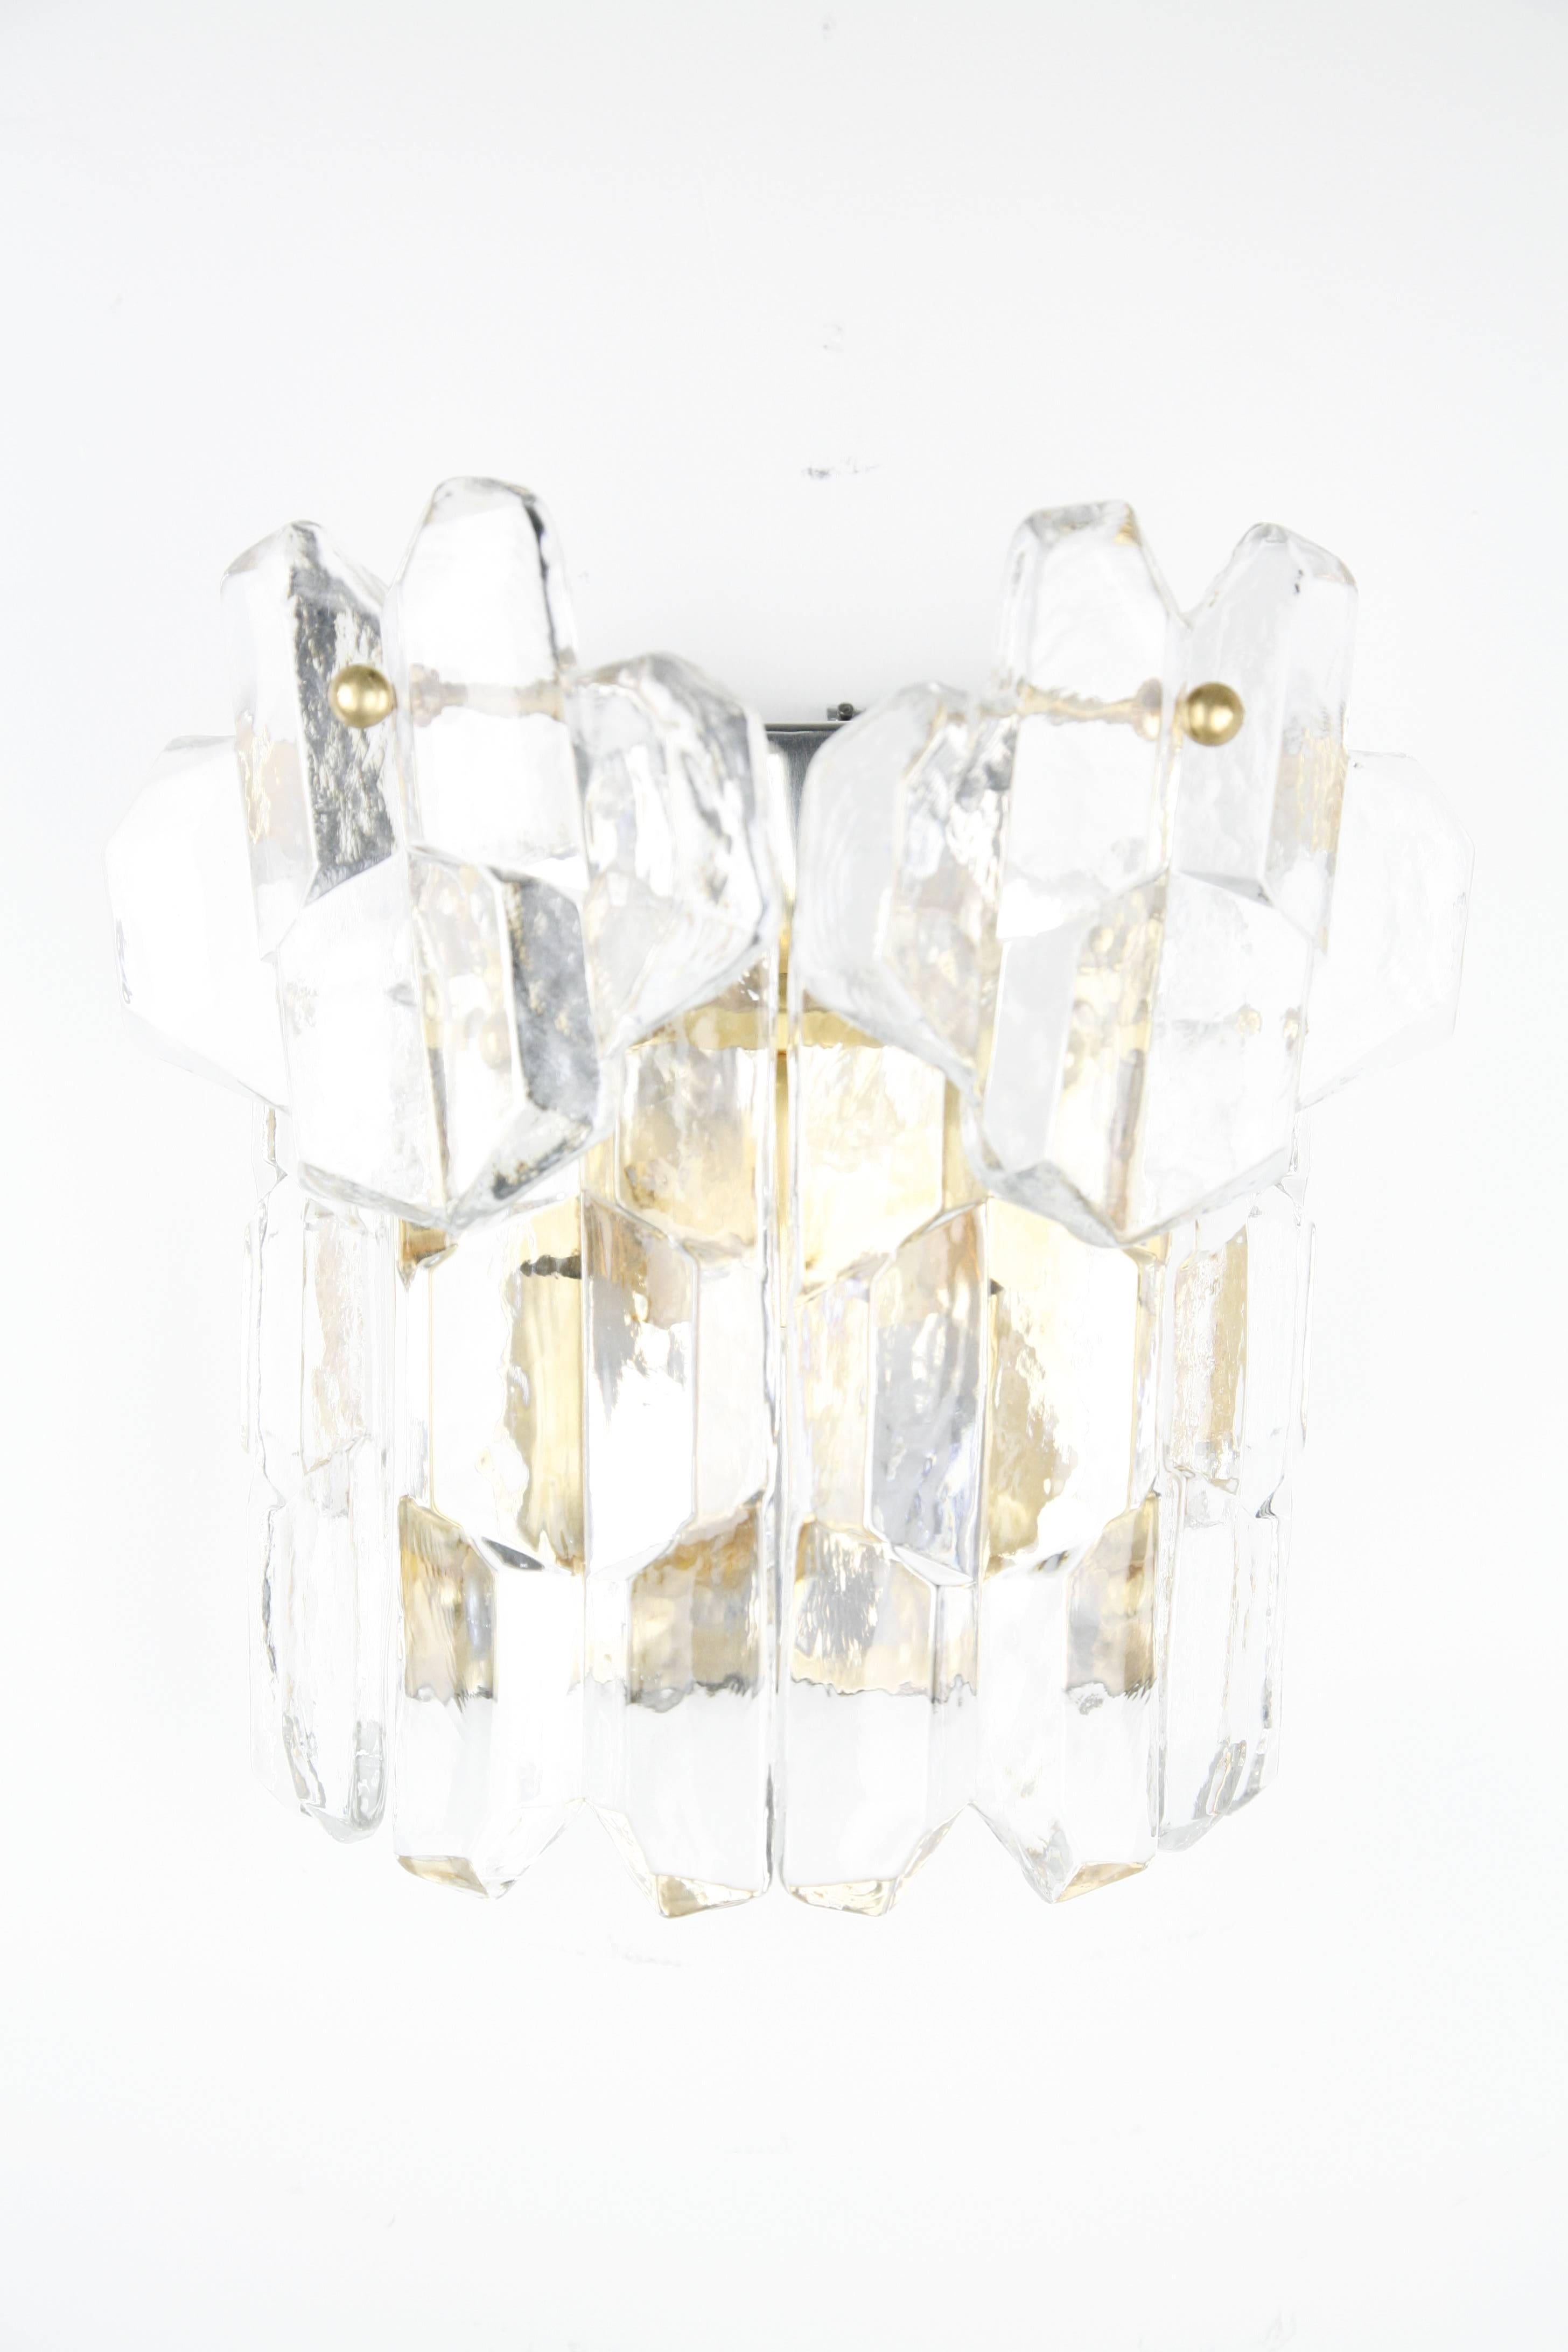 Une seule applique Kalmar palazzo en cristal des années 1970 à Vienne en Autriche, six pièces épaisses et transparentes en cristal sur un cadre en chrome doré à 24 carats, le cadre a été poli au fil du temps de sorte que le chrome brille derrière le